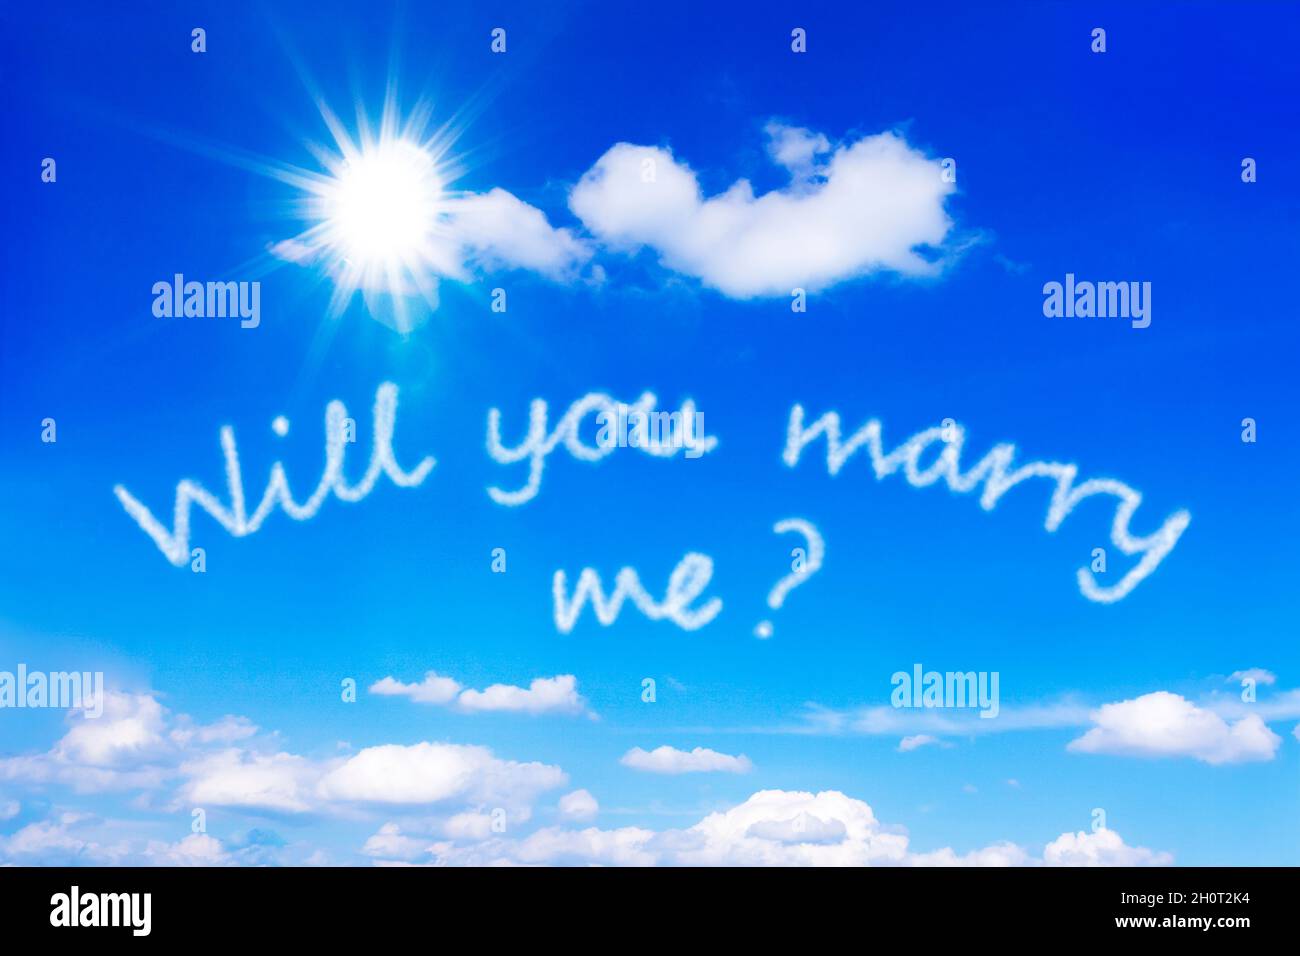 Mi sposi messaggio scritto su un cielo blu soleggiato. Modello molto romantico per una proposta di matrimonio. Foto Stock